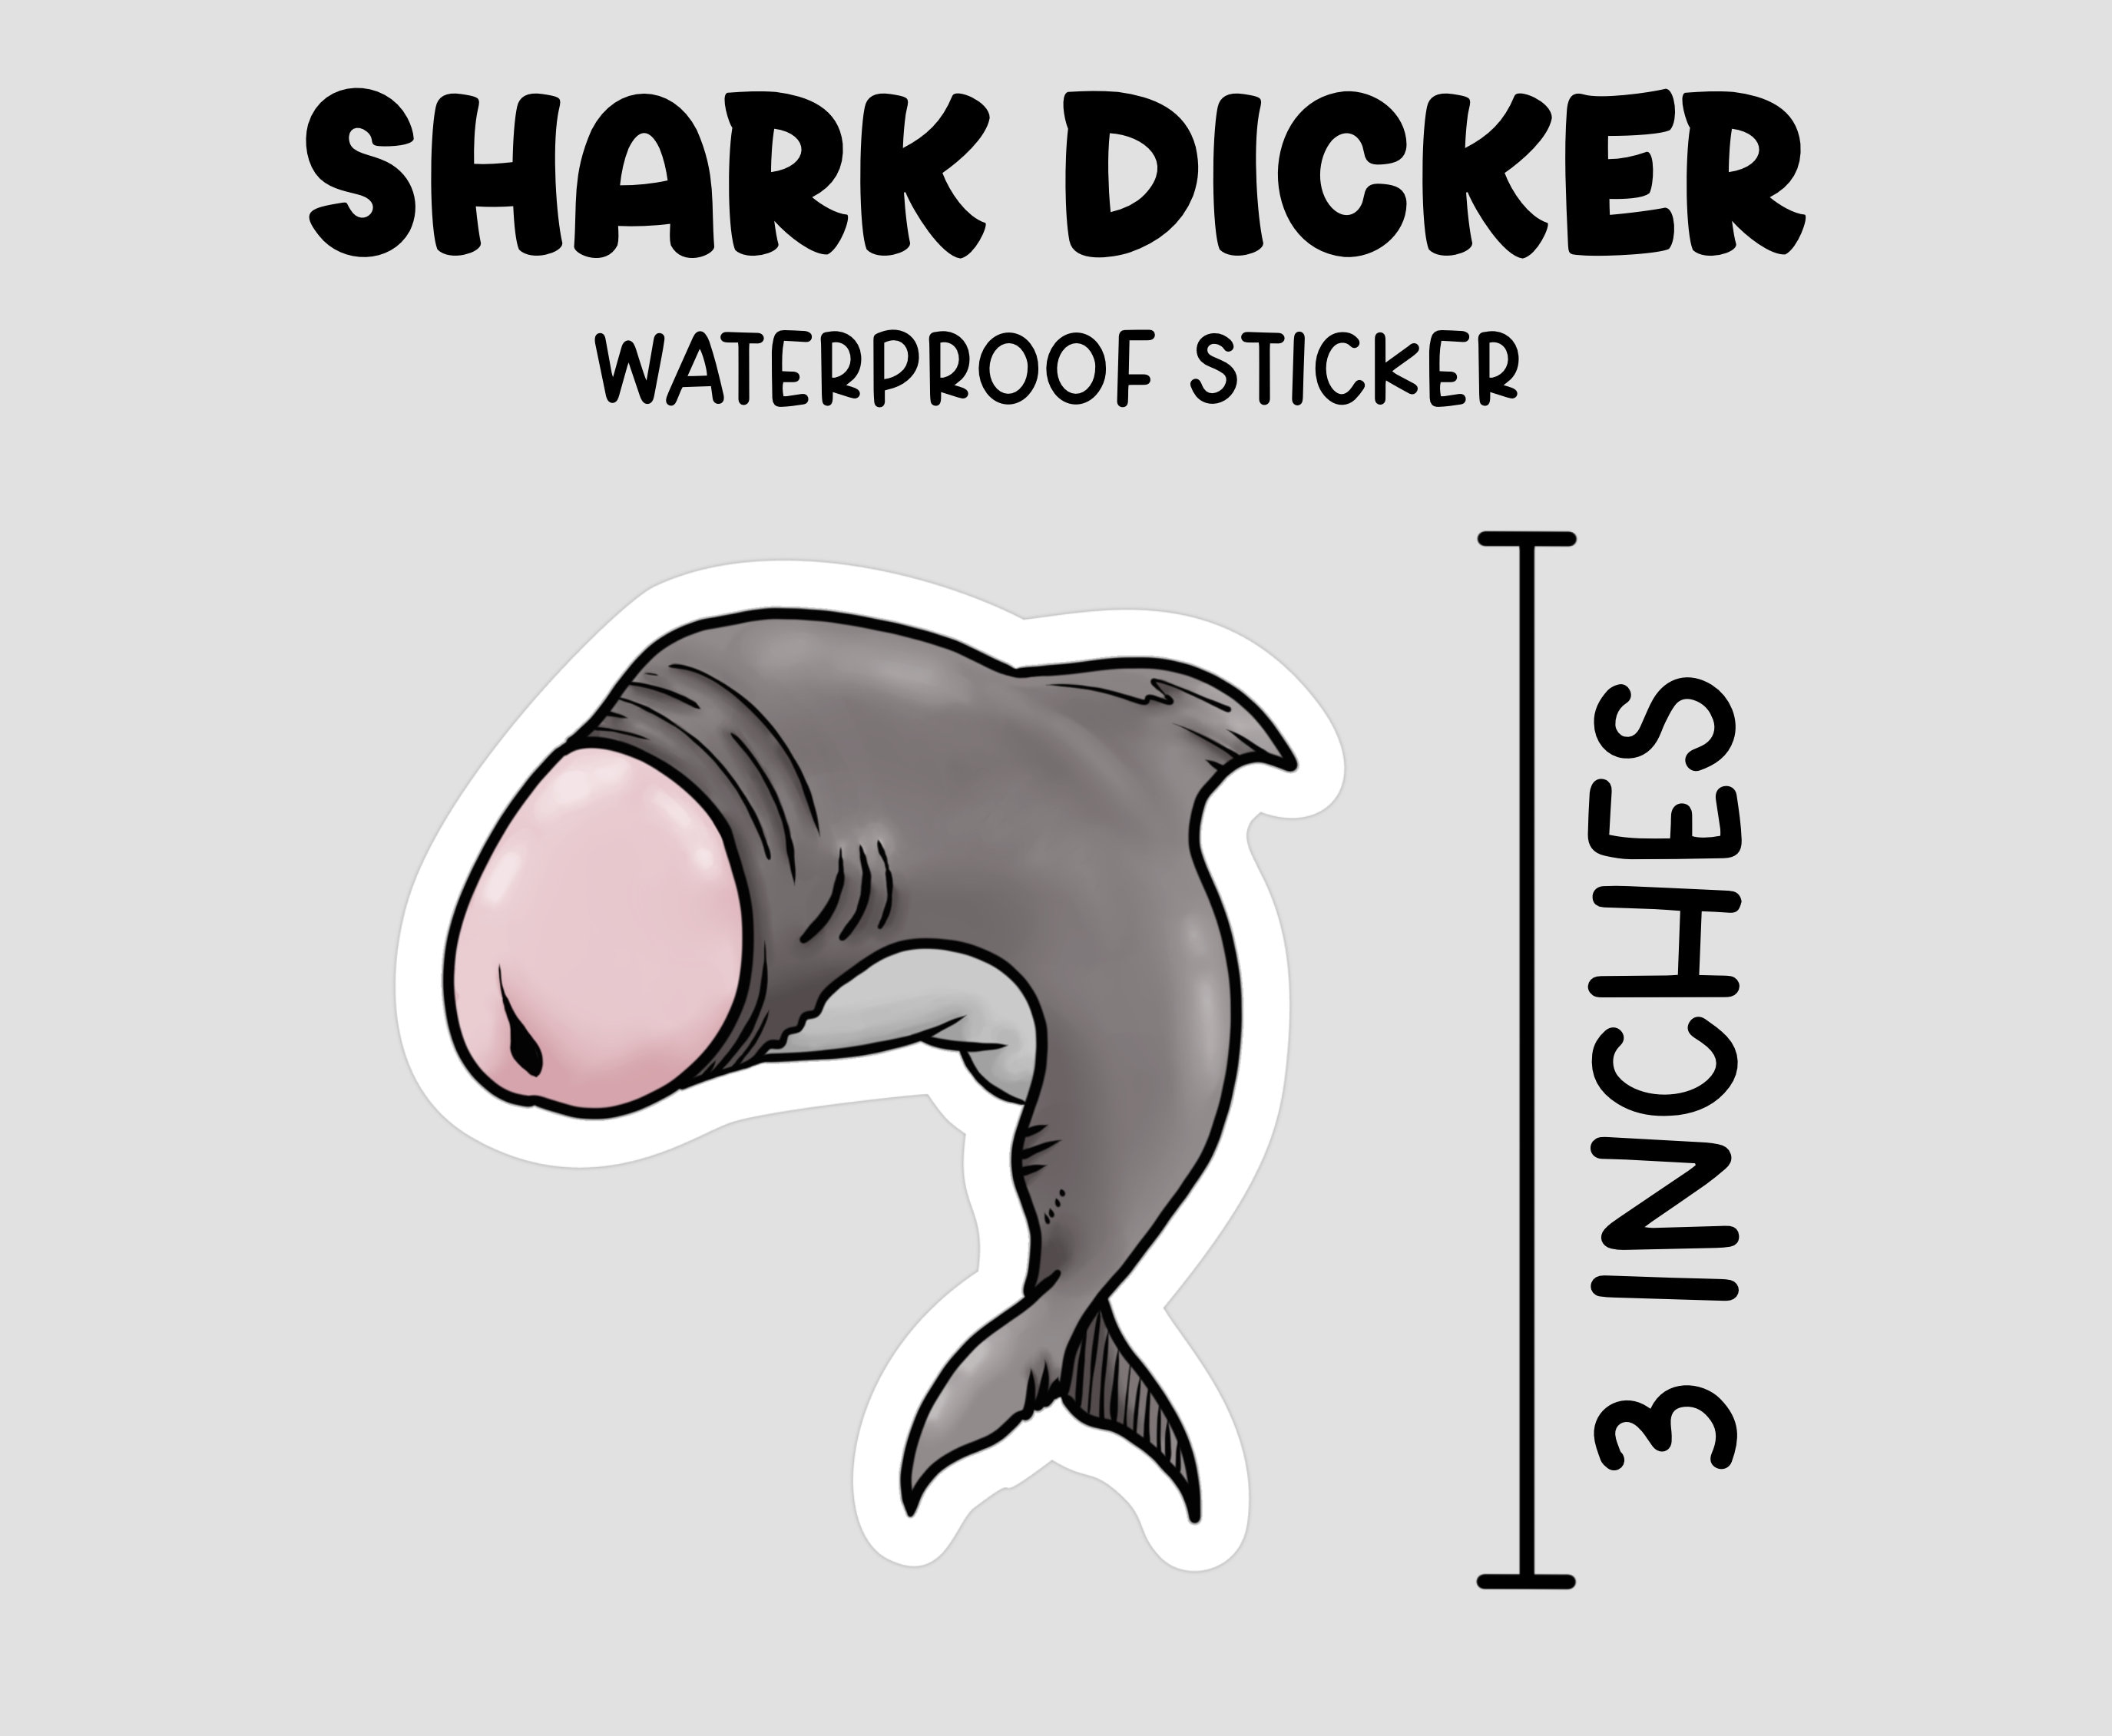 Shark Penis Sticker, Waterproof Sticker, Funny Laptop Sticker, Prank  Sticker, NSFW, Lewd Stickers, Funny Gift Idea, Shark Sticker, 18 